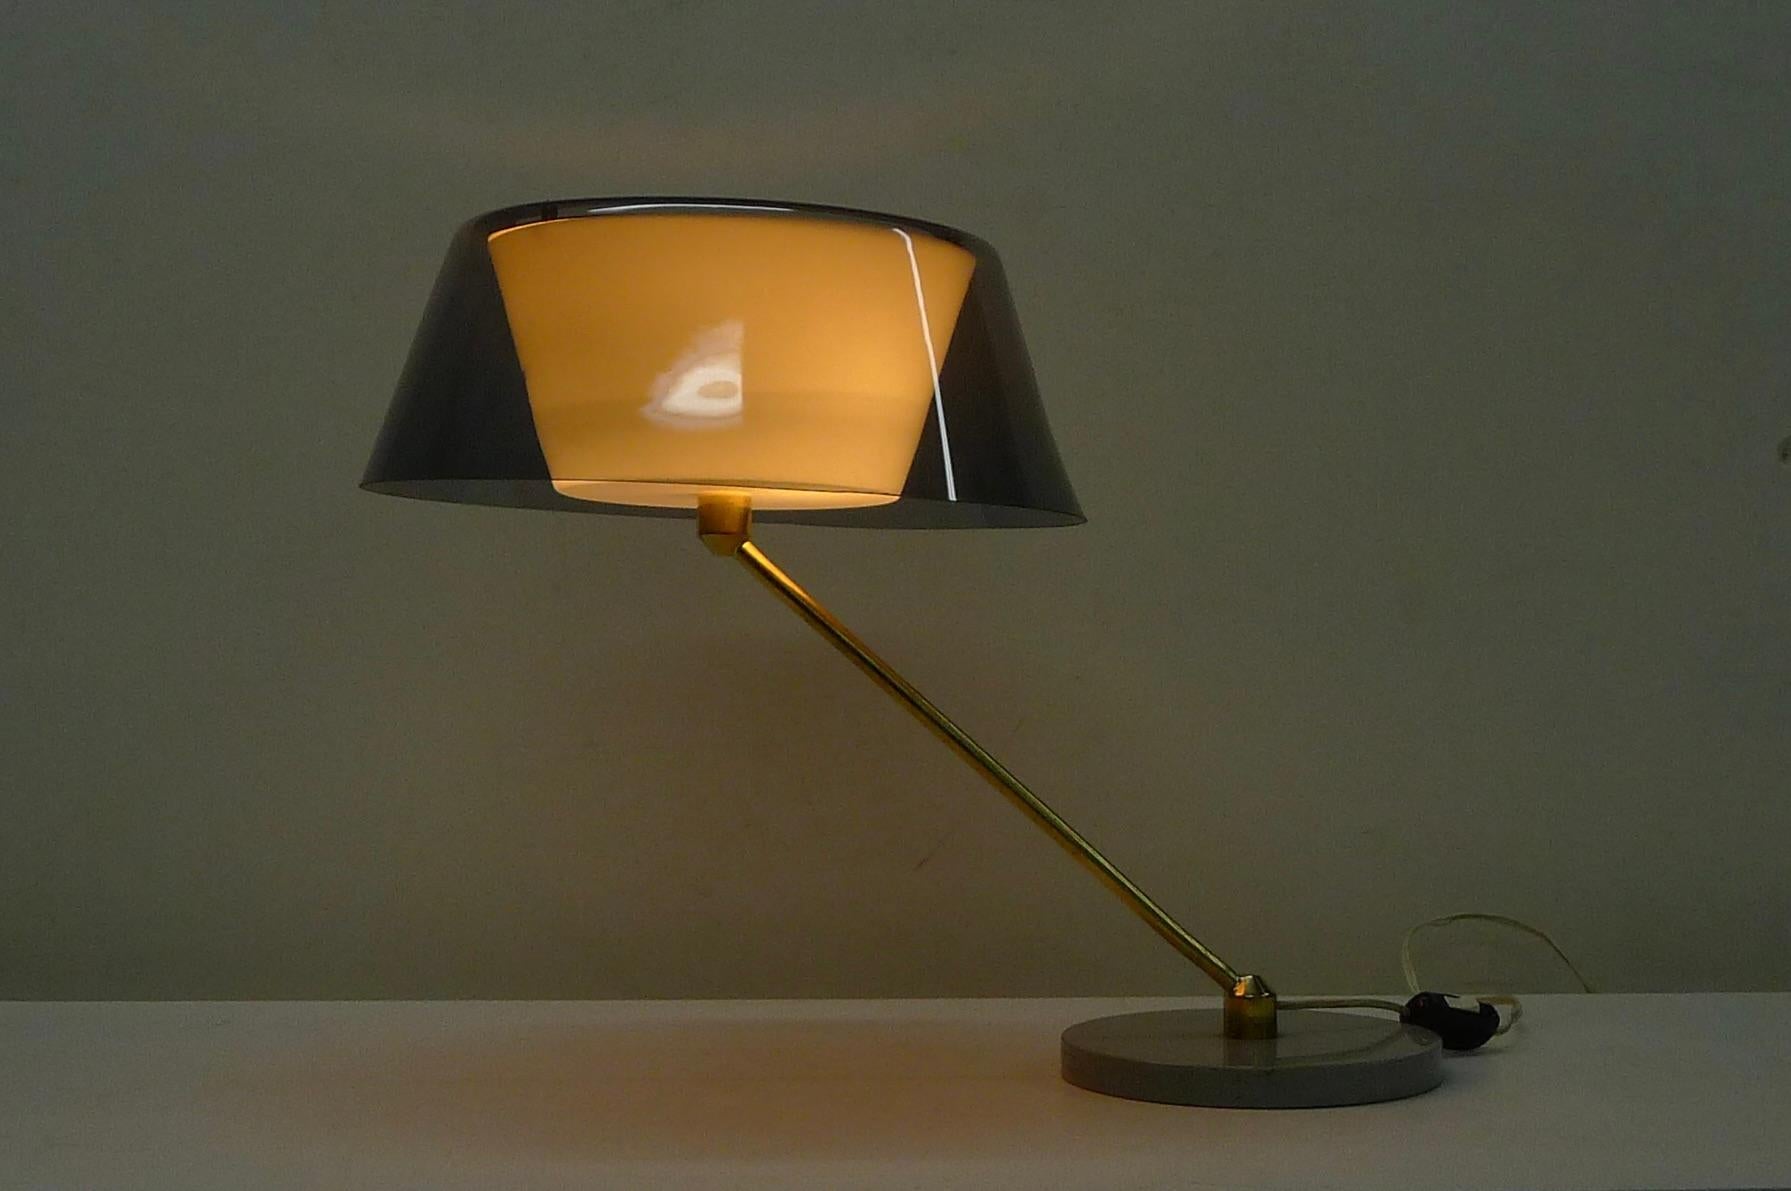 Tito Agnoli, Modello 253, Tischleuchte, entworfen 1958 und hergestellt um 1960 von O'Luce, Italien.  Mit umgedrehten Plexiglasschirmen, der äußere in zartem Violett, der innere in Weiß. 
Der Stiel aus Messing dreht sich auf dem grau emaillierten